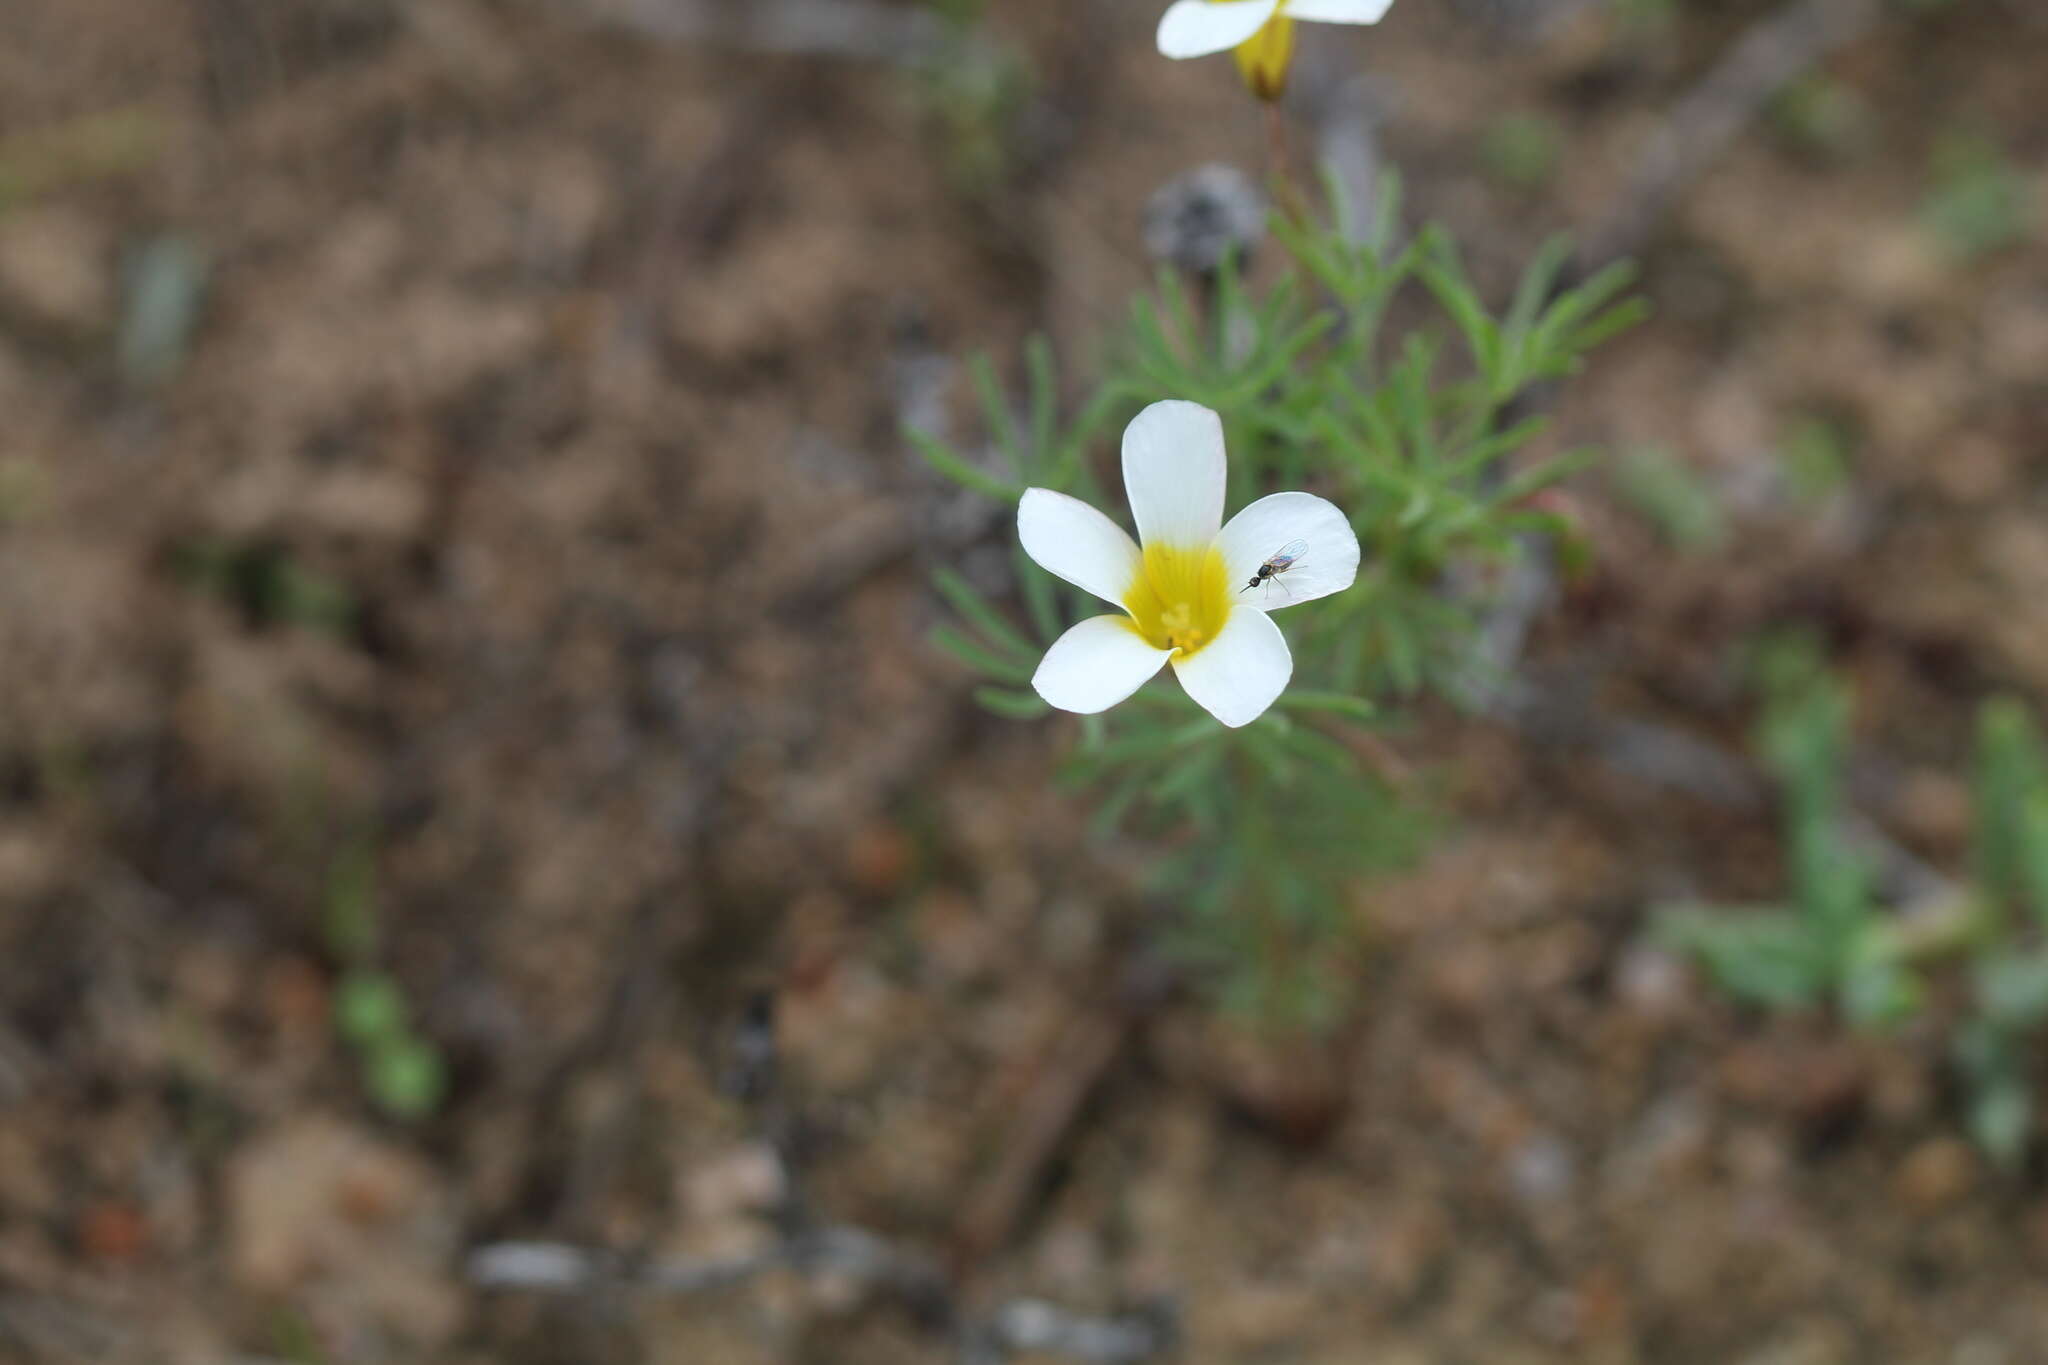 Sivun Oxalis capillacea E. Mey. ex Harv. & Sond. kuva